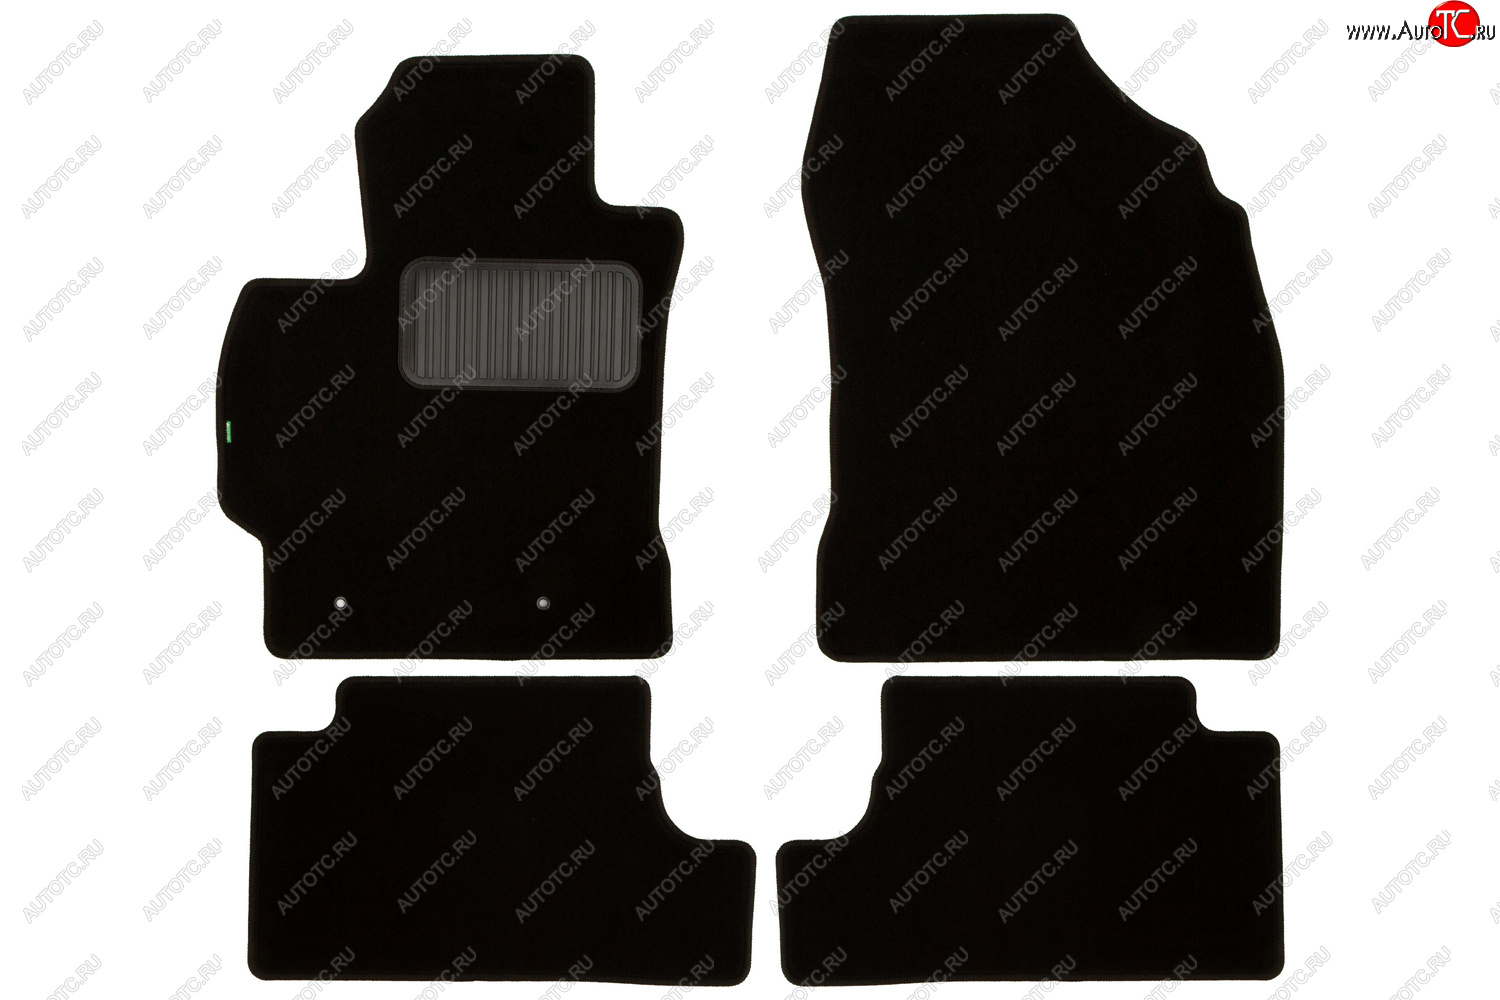 4 899 р. Комплект ковриков в салон (чёрные, текстиль) Klever Standard Toyota Corolla E140 седан рестайлинг (2009-2013)